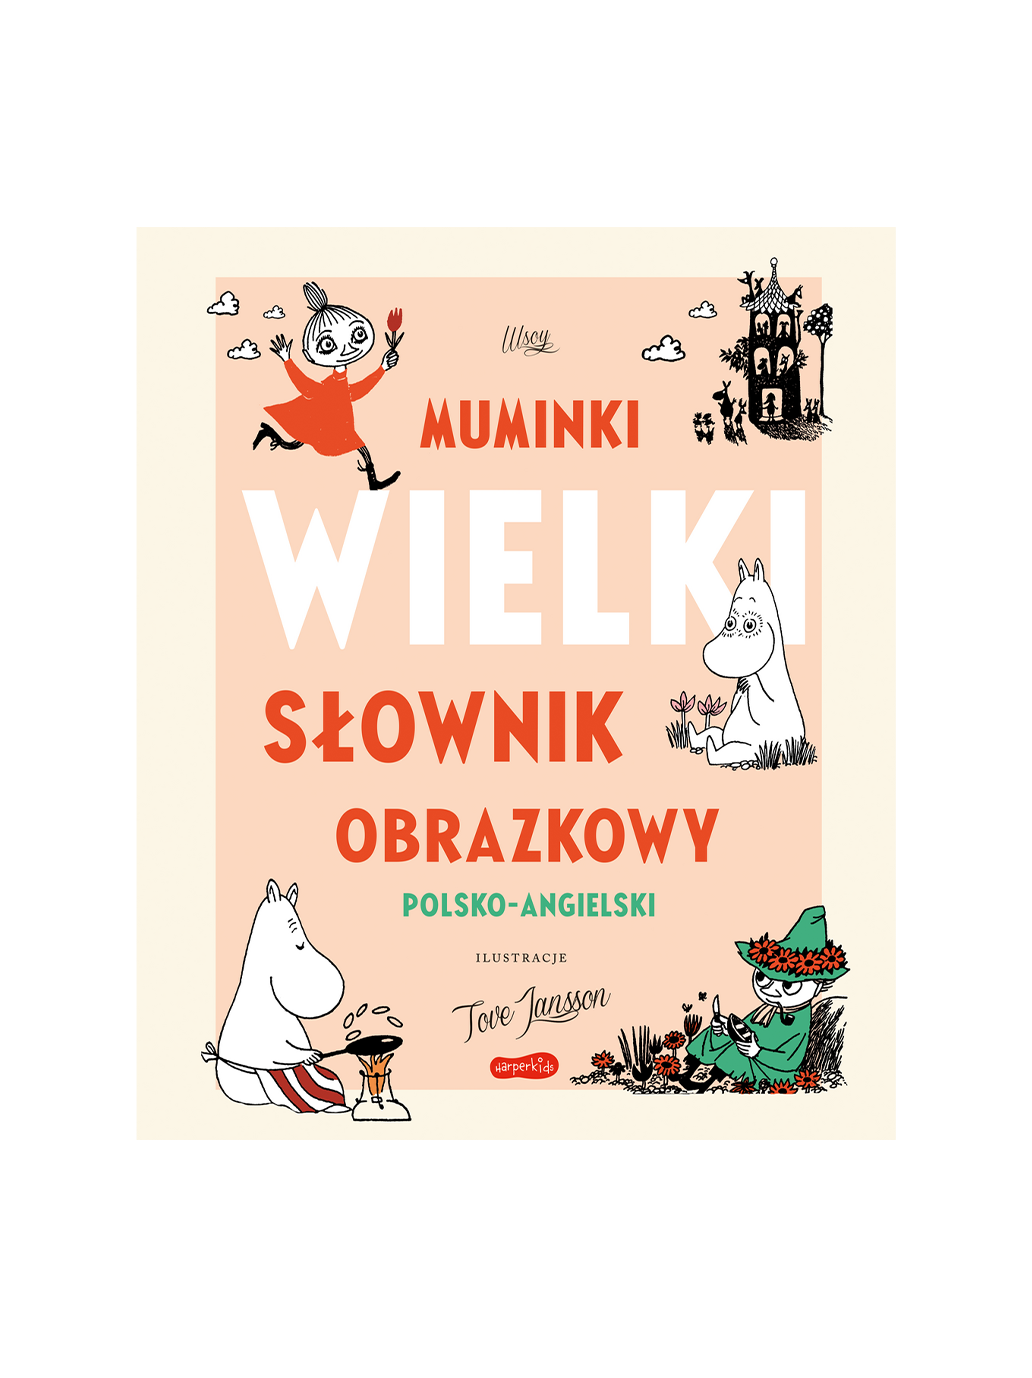 Grand dictionnaire illustré polonais-anglais